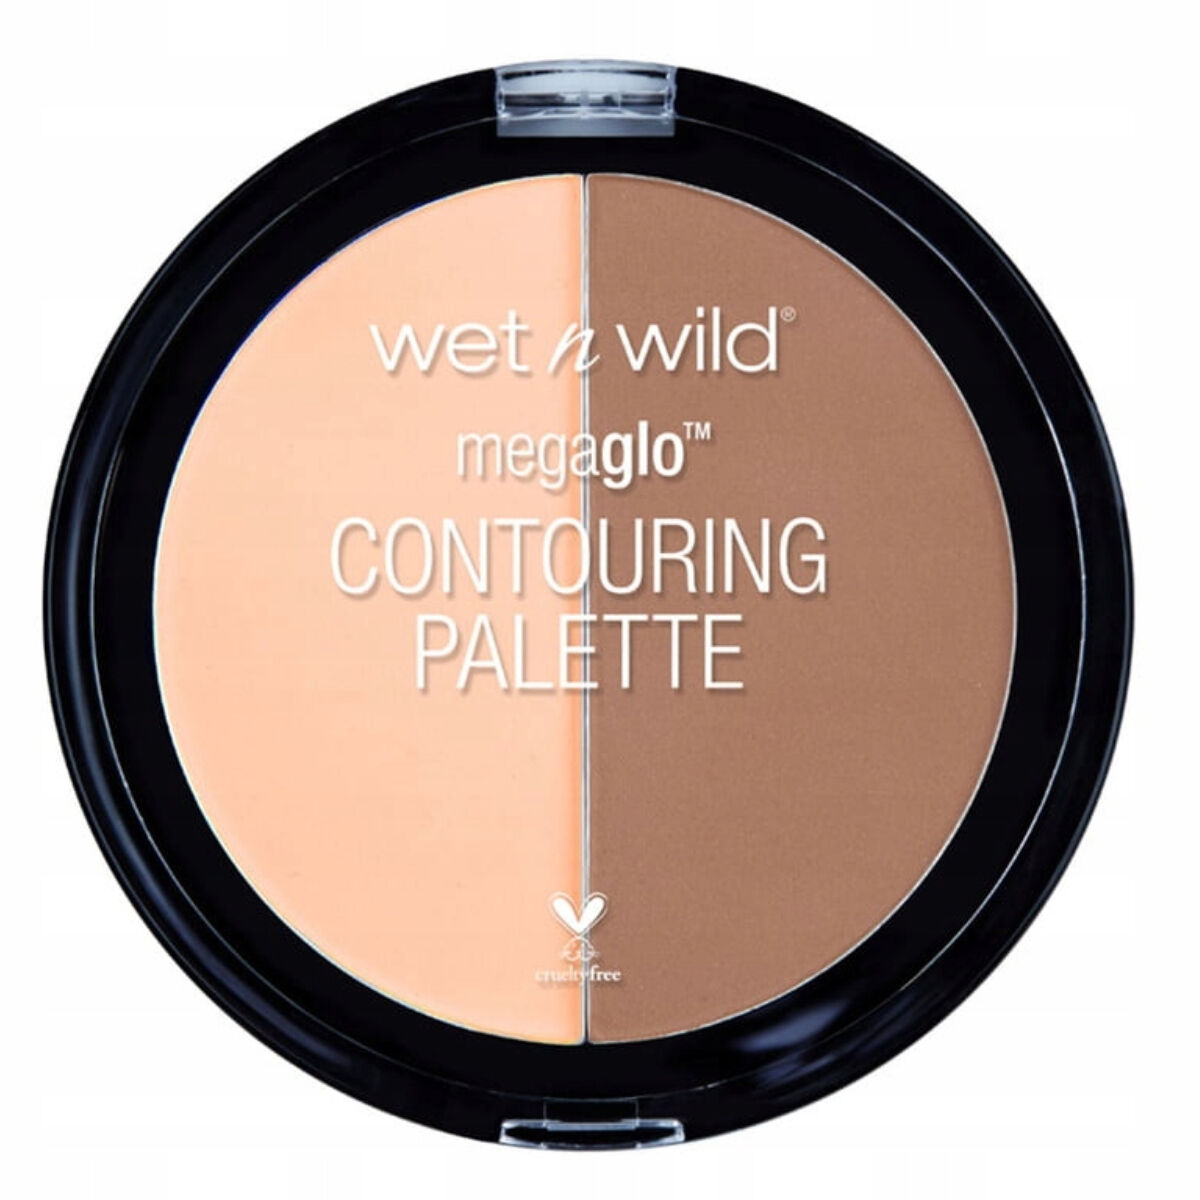 Палетка для контуринга лица Wet N Wild Dulce De Leche, 12,5 гр набор для контуринга wet n wild megaglo contouring palette contour 12